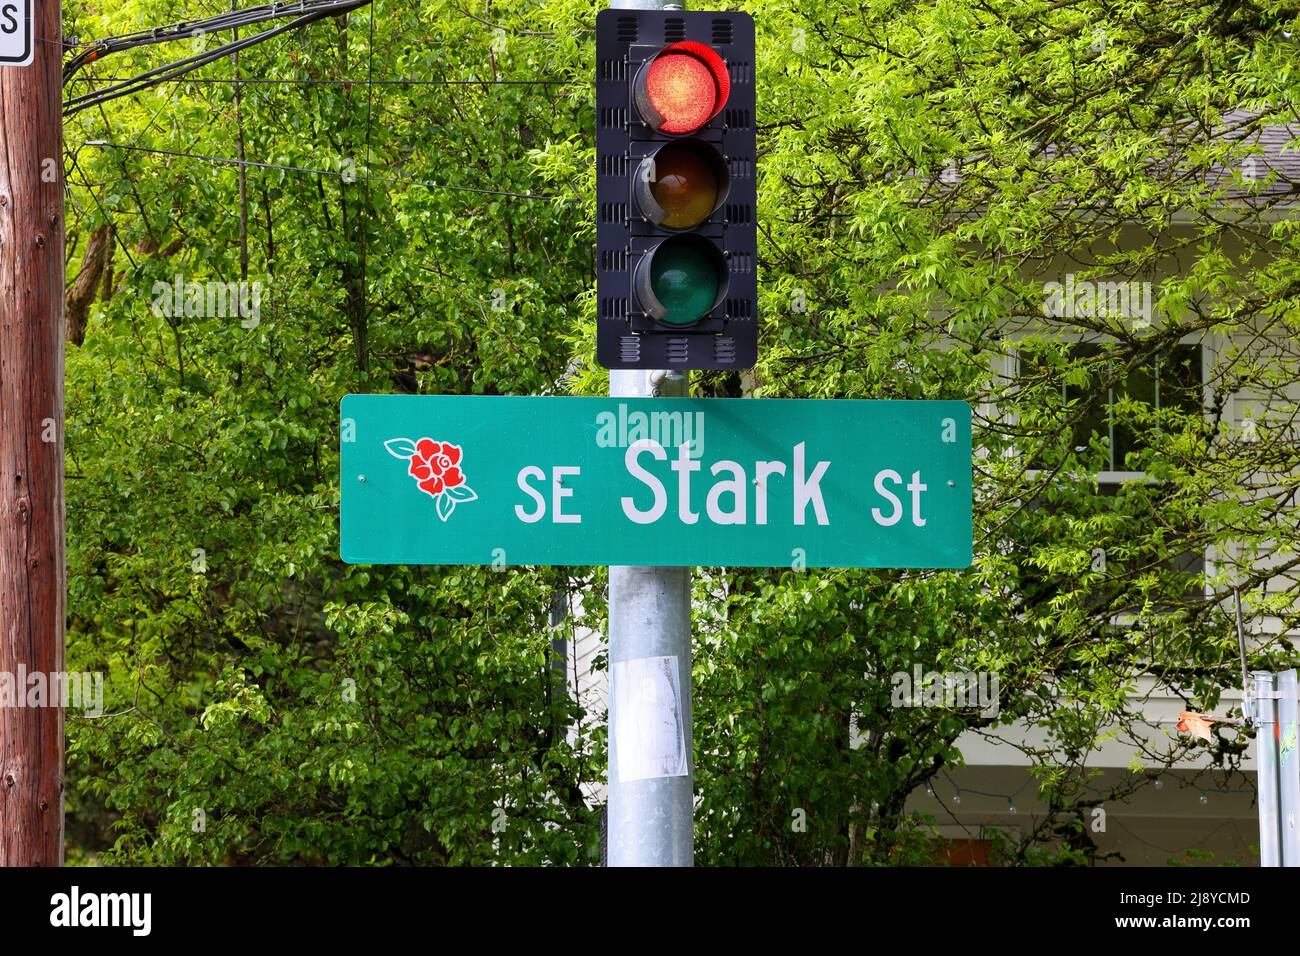 Large street signage for SE Stark St, Portland, Oregon. Stock Photo